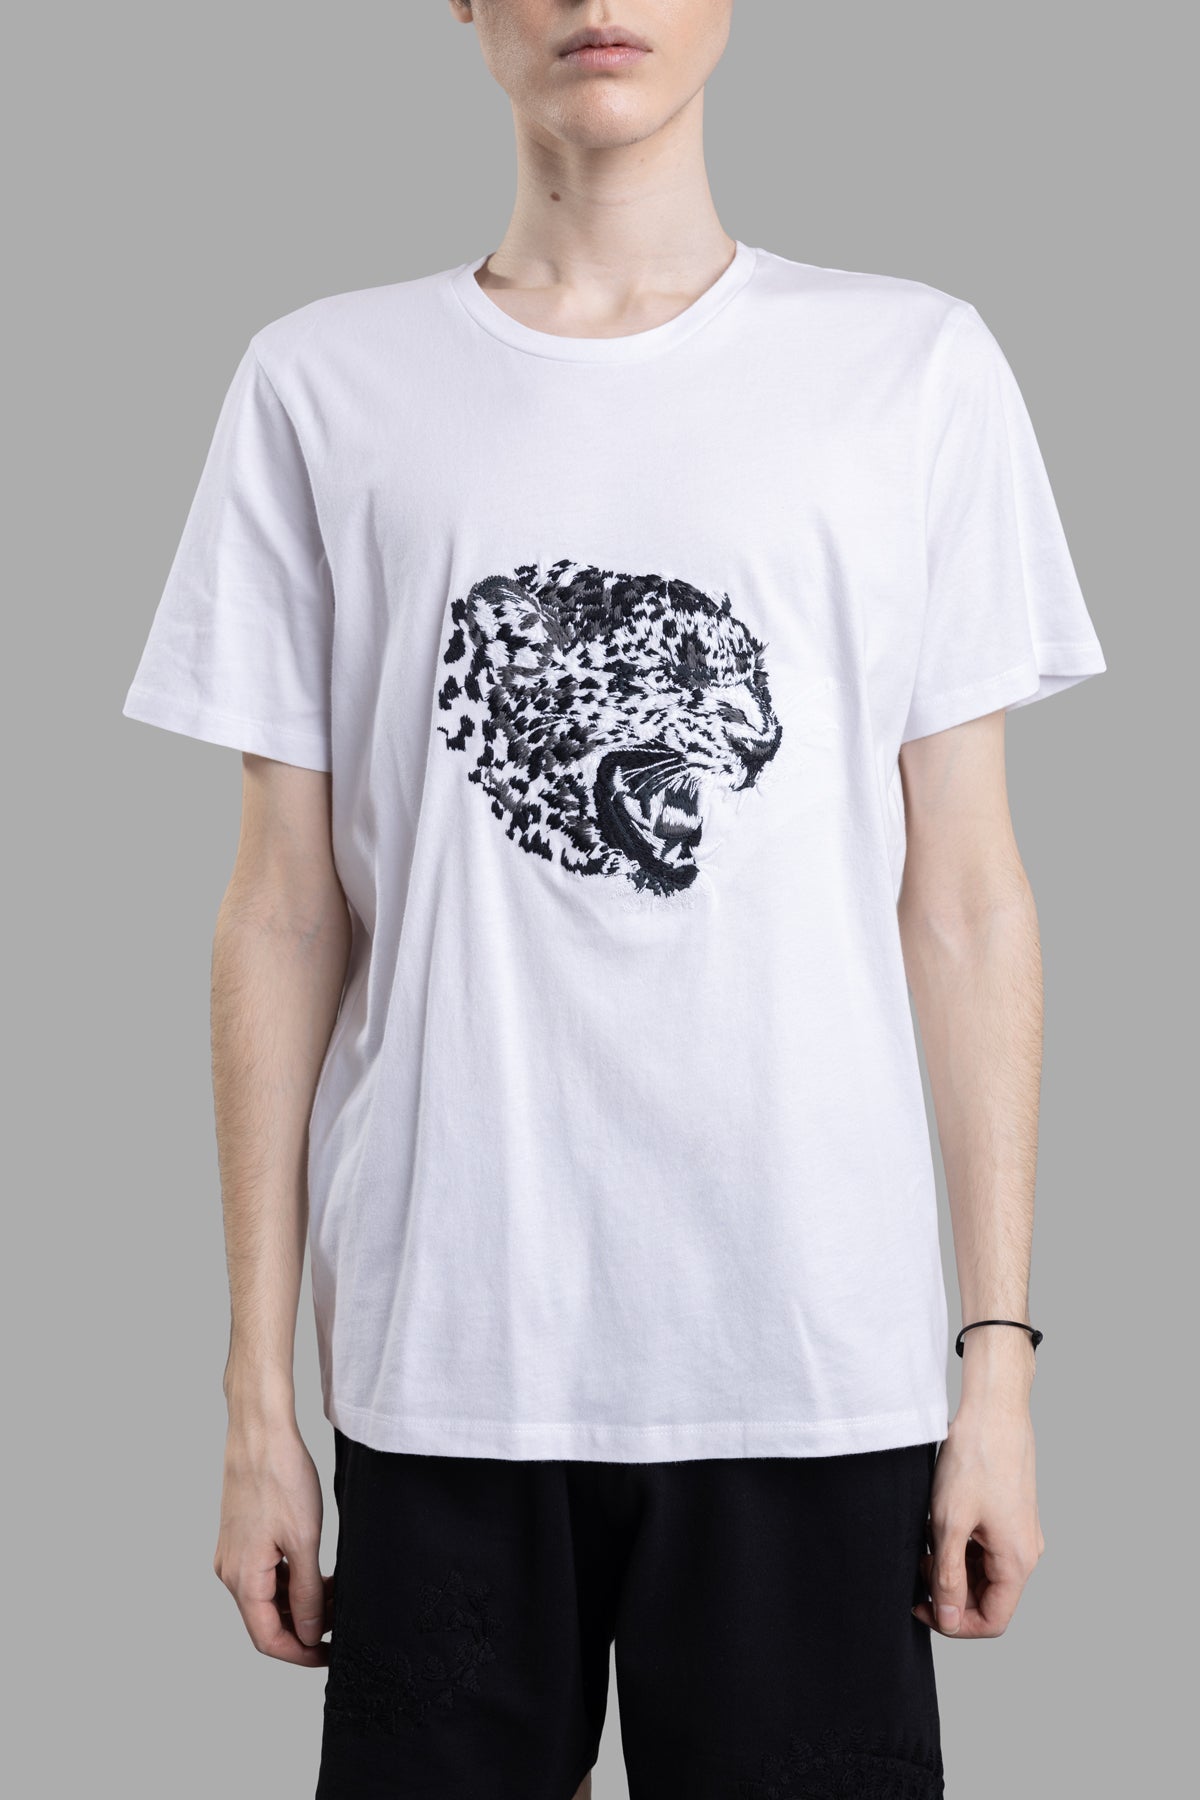 Leopard T-shirt